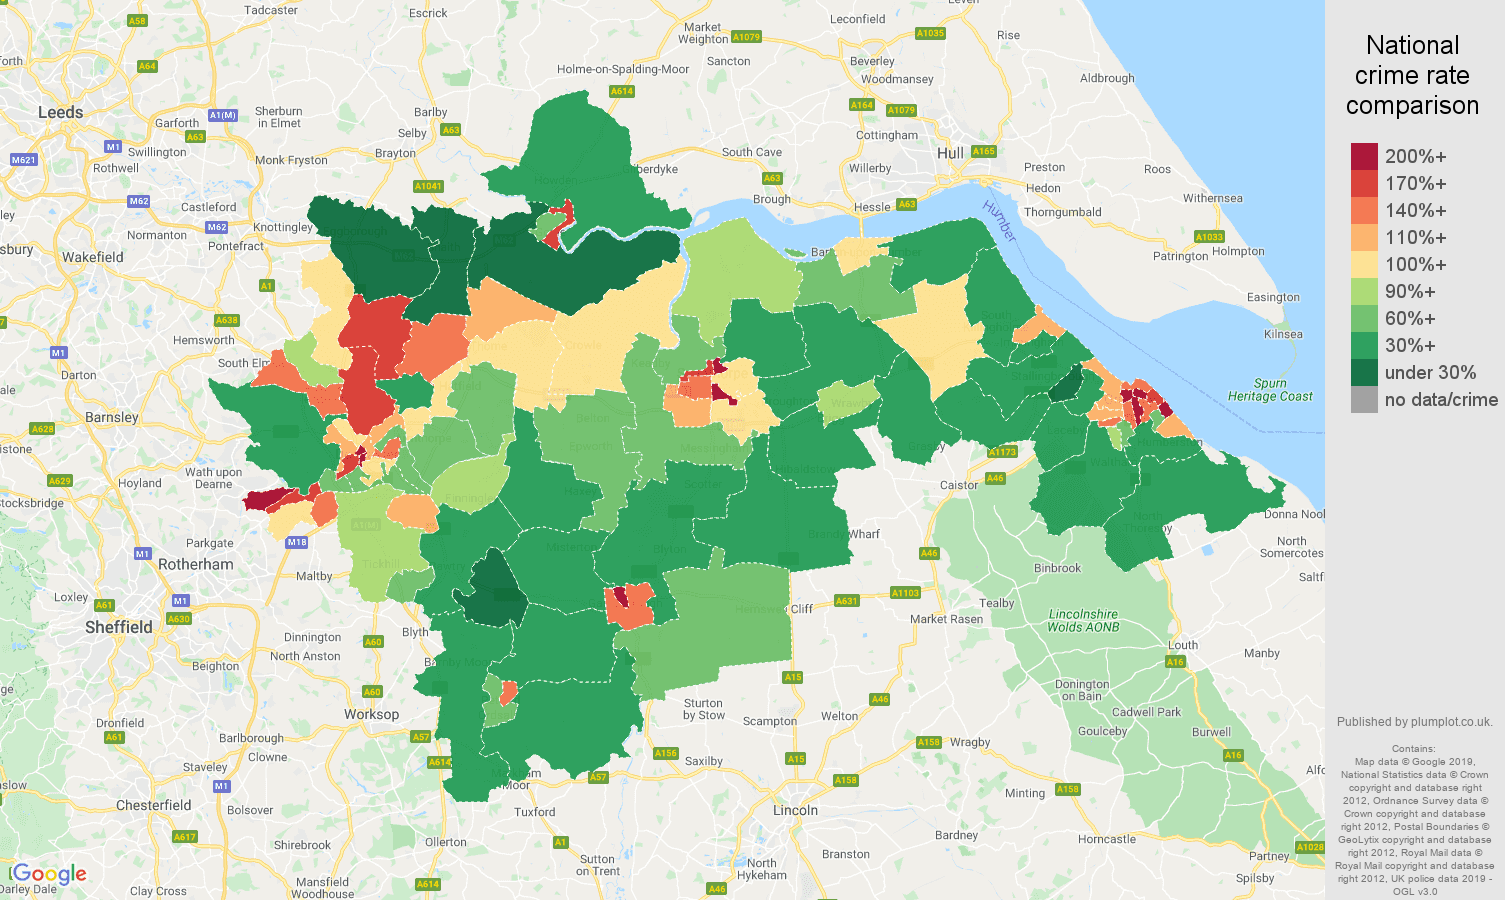 Doncaster public order crime rate comparison map